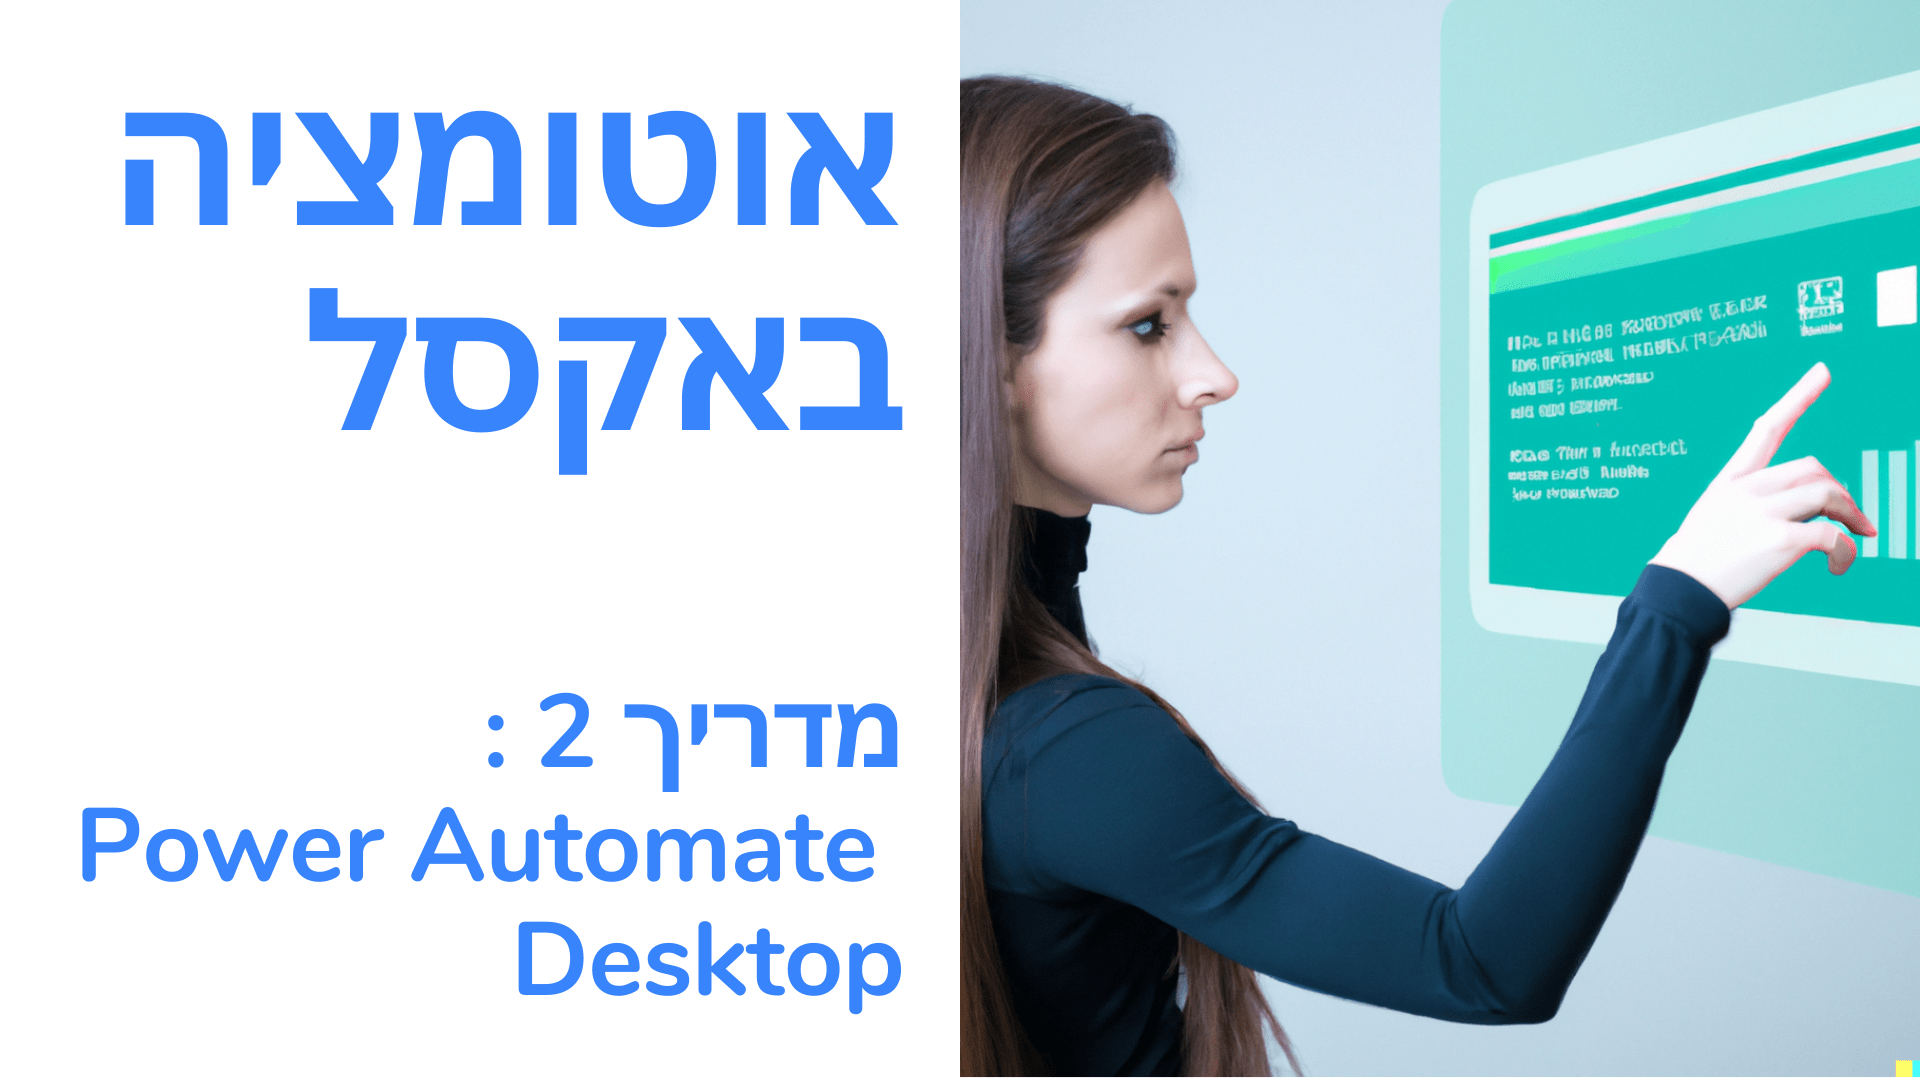 讗讜讟讜诪爪讬讛 讘- Excel. 诪讚专讬讱 2 注诇 Power Automate Desktop